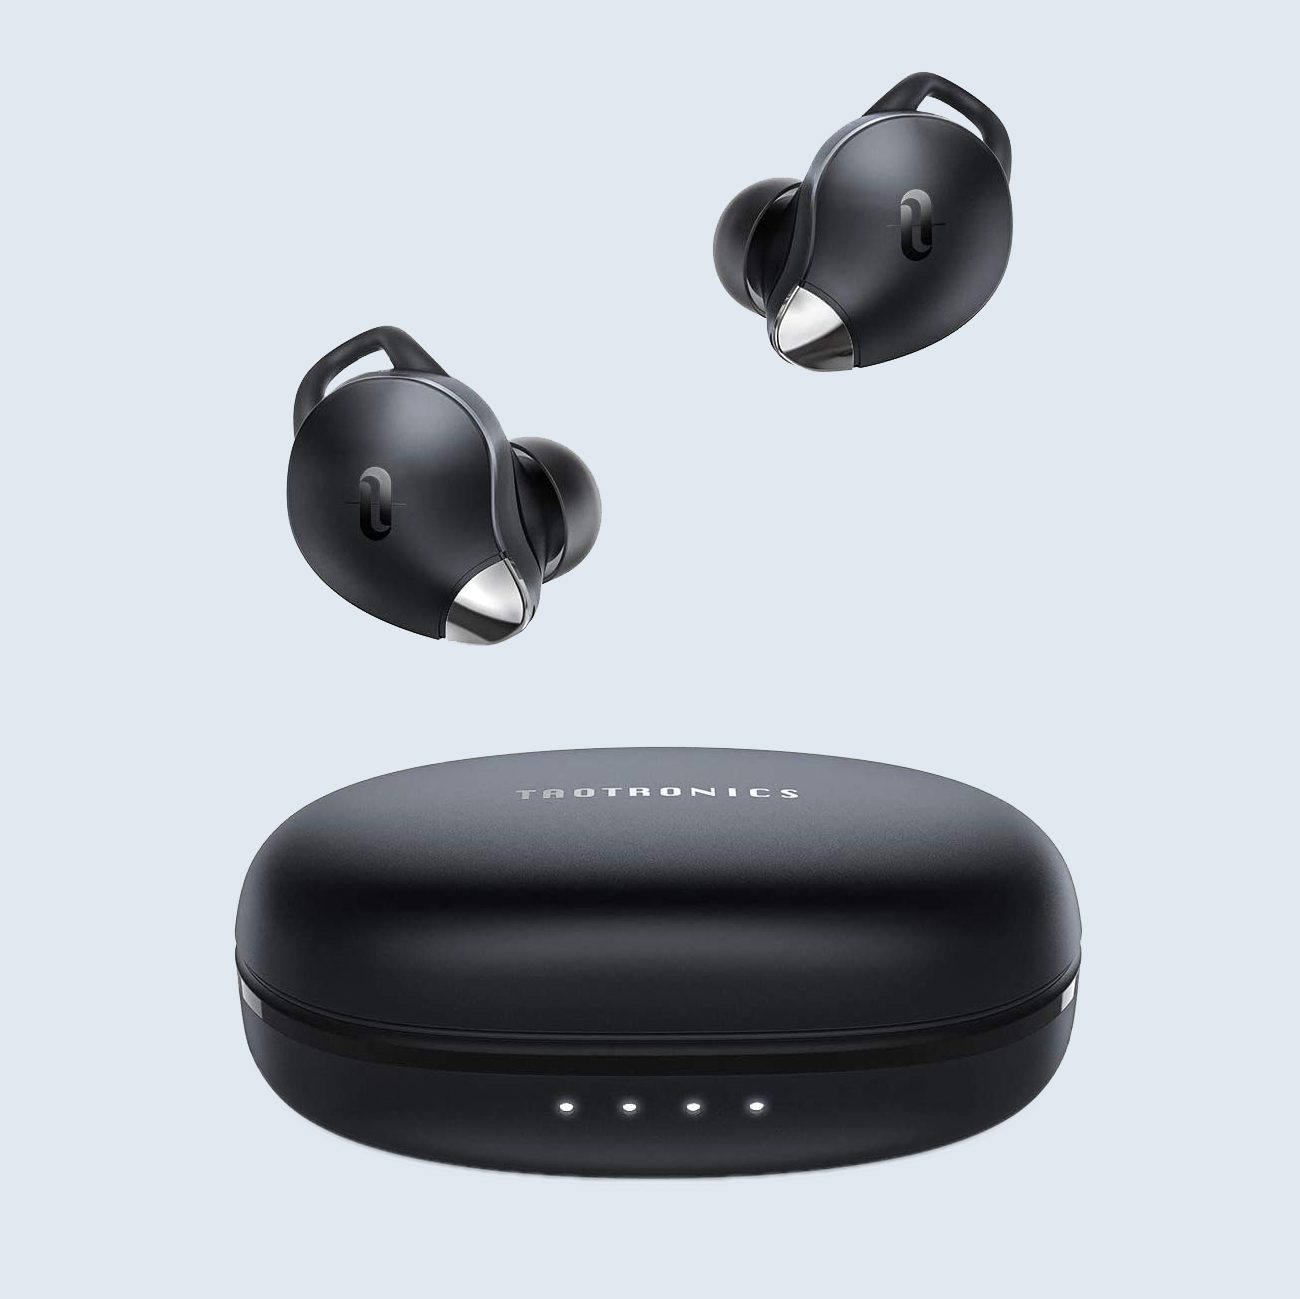 TaoTronics wireless earbuds